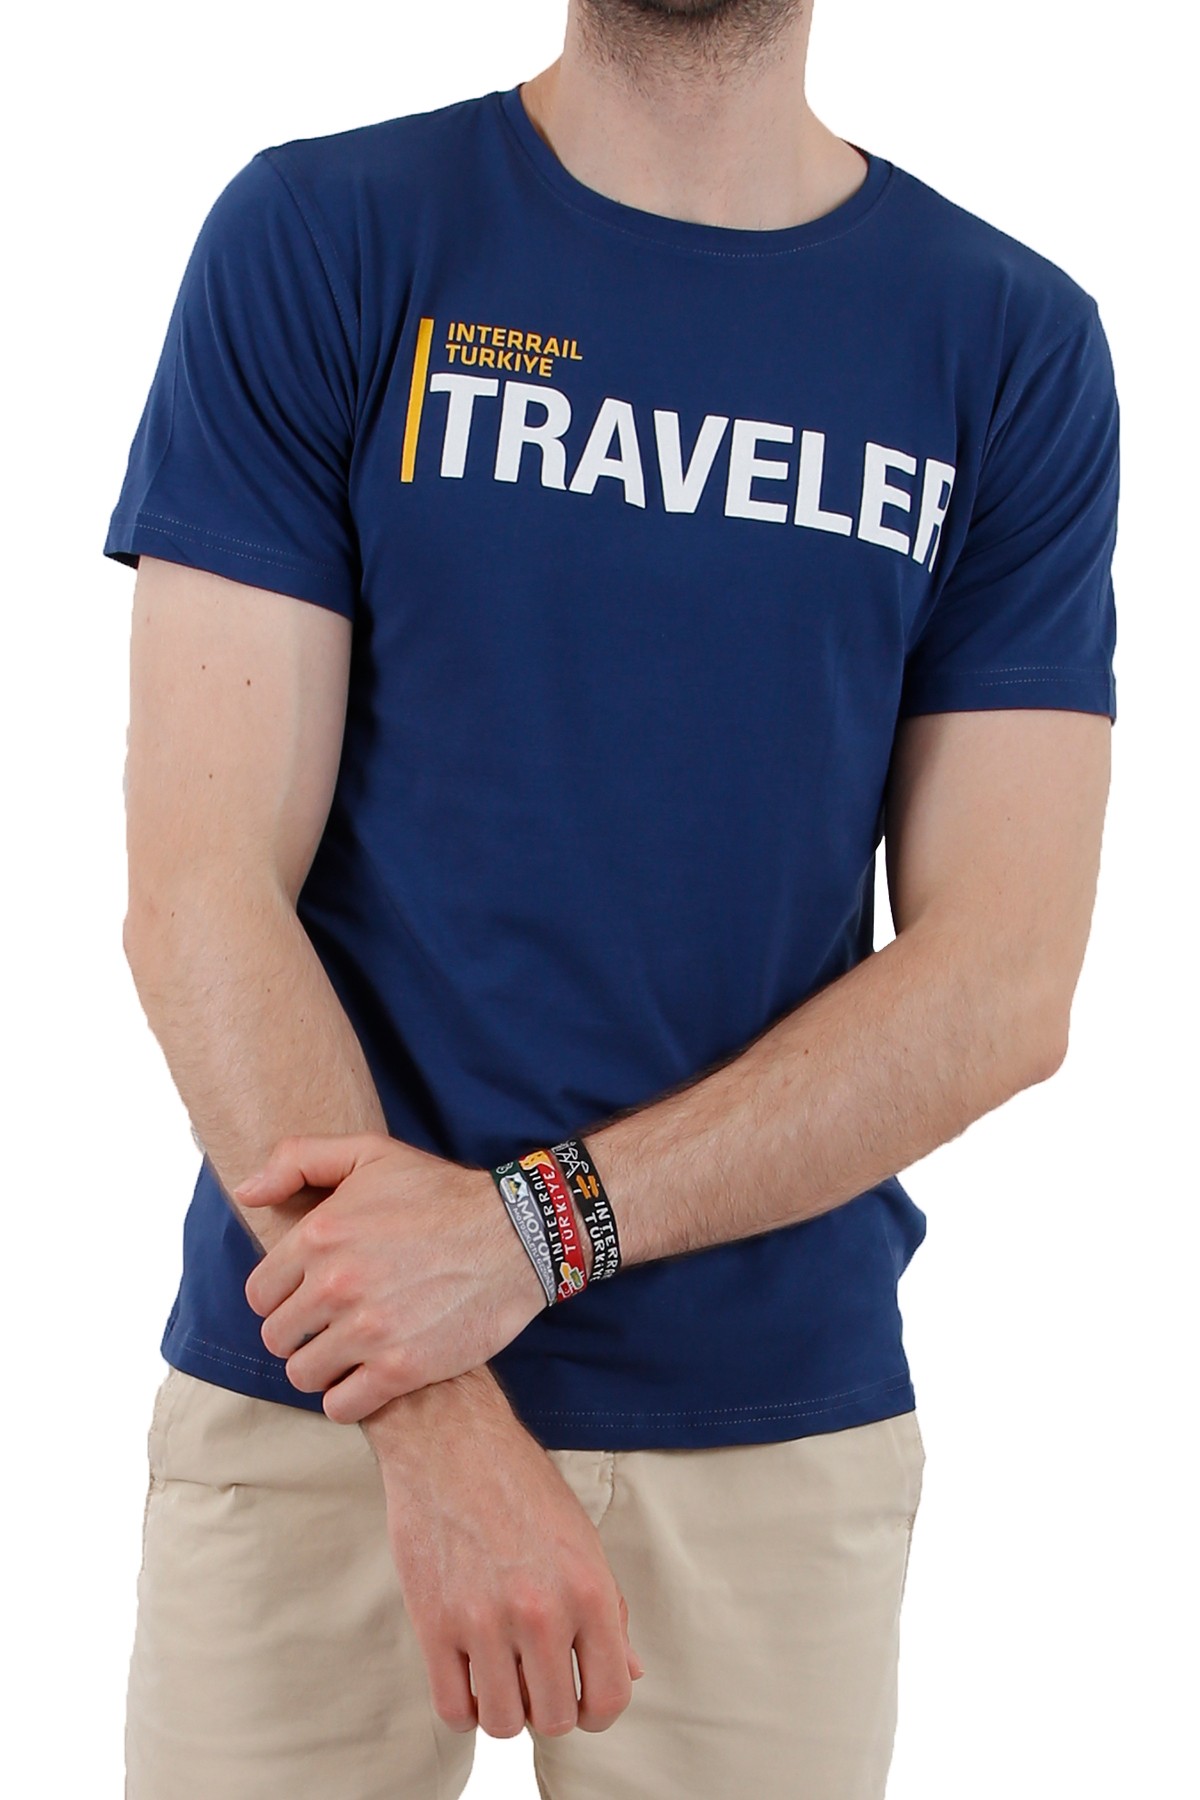 Interrail Türkiye "TRAVELER" Özel Tasarım T-shirt  / Koyu Mavi